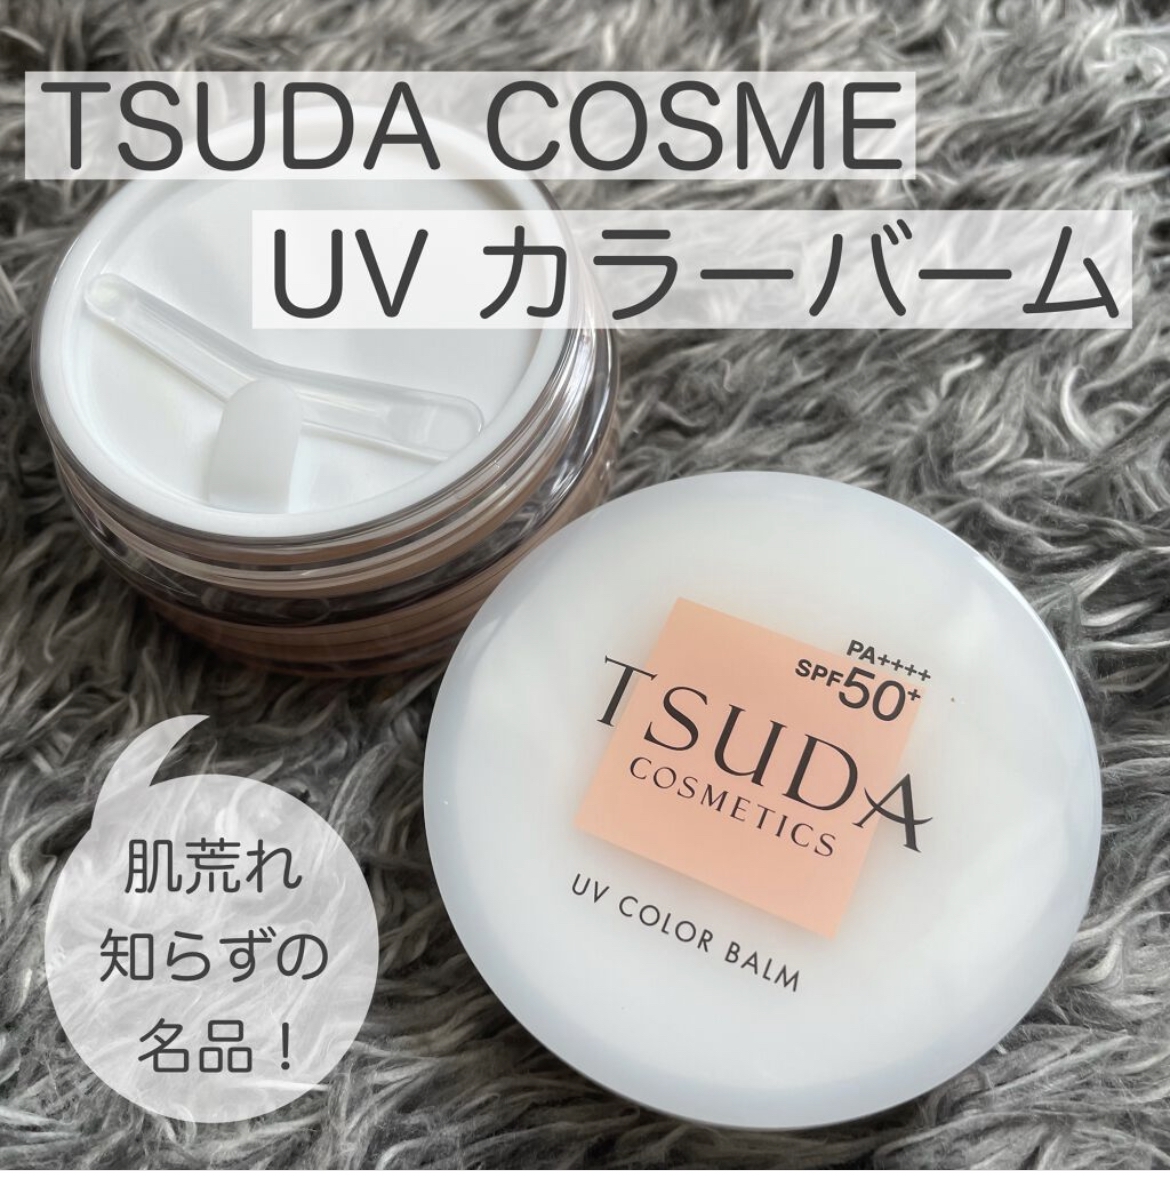 津田コスメ(TSUDA COSMETICS) UV カラーバームの良い点・メリットに関するけいさんの口コミ画像1